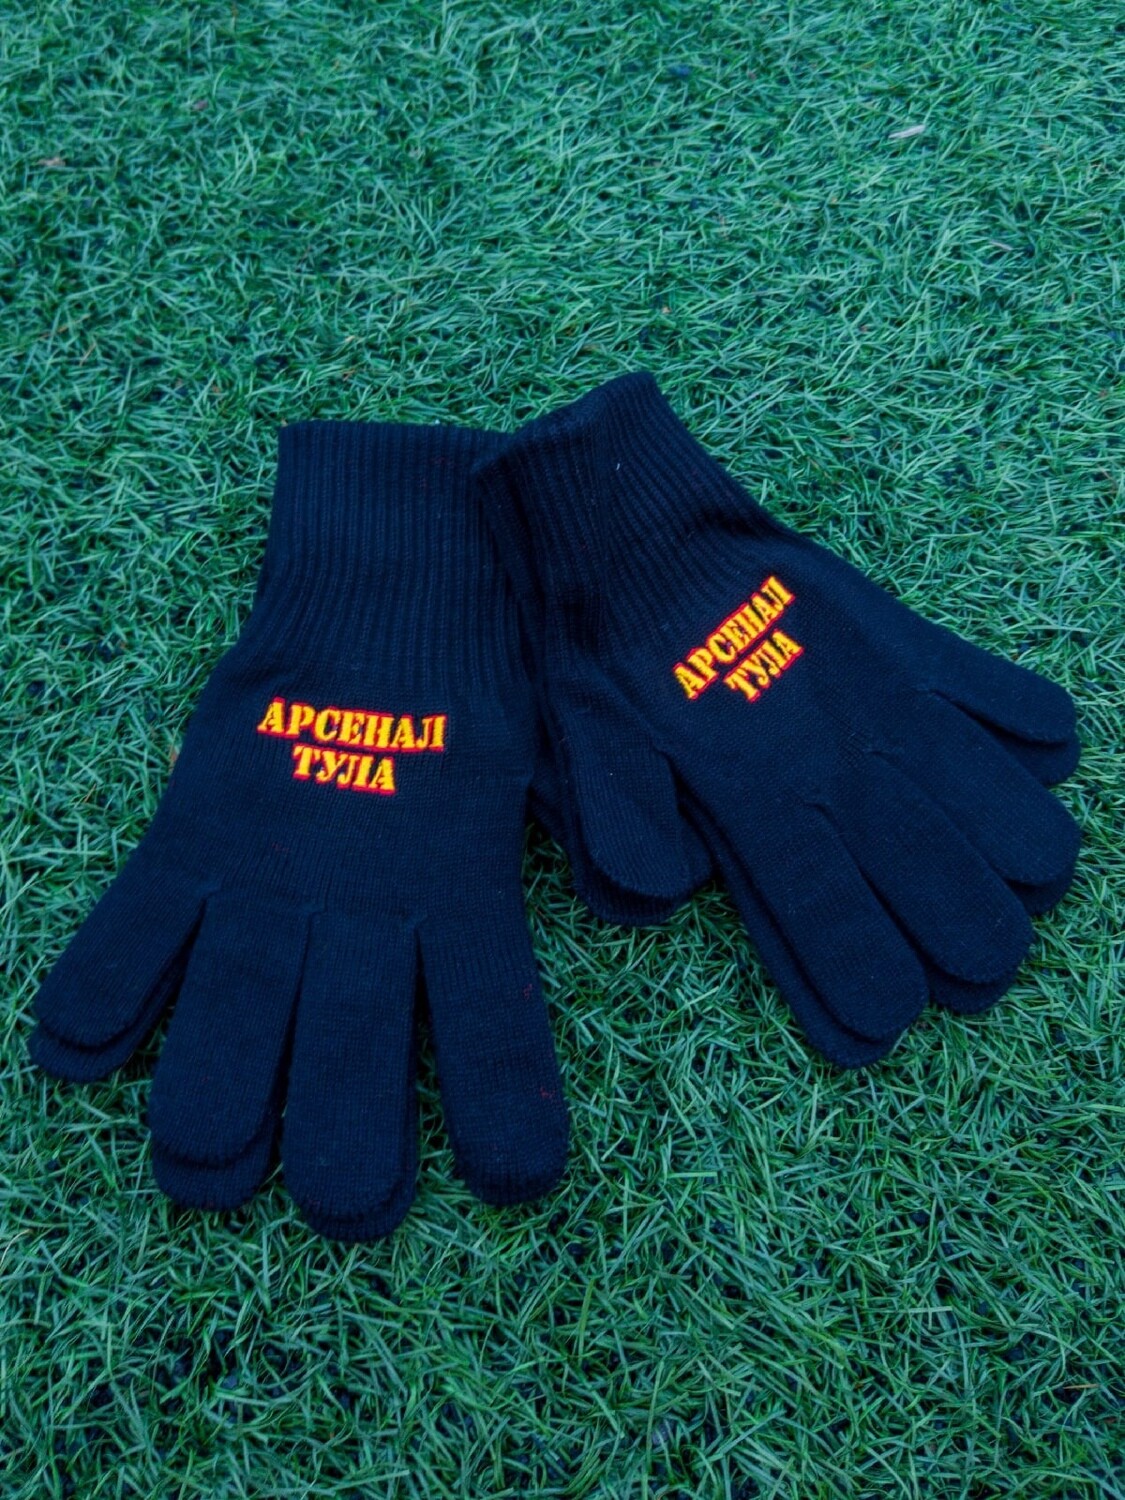 Вязанные перчатки с вышивкой "Арсенал - Тула"